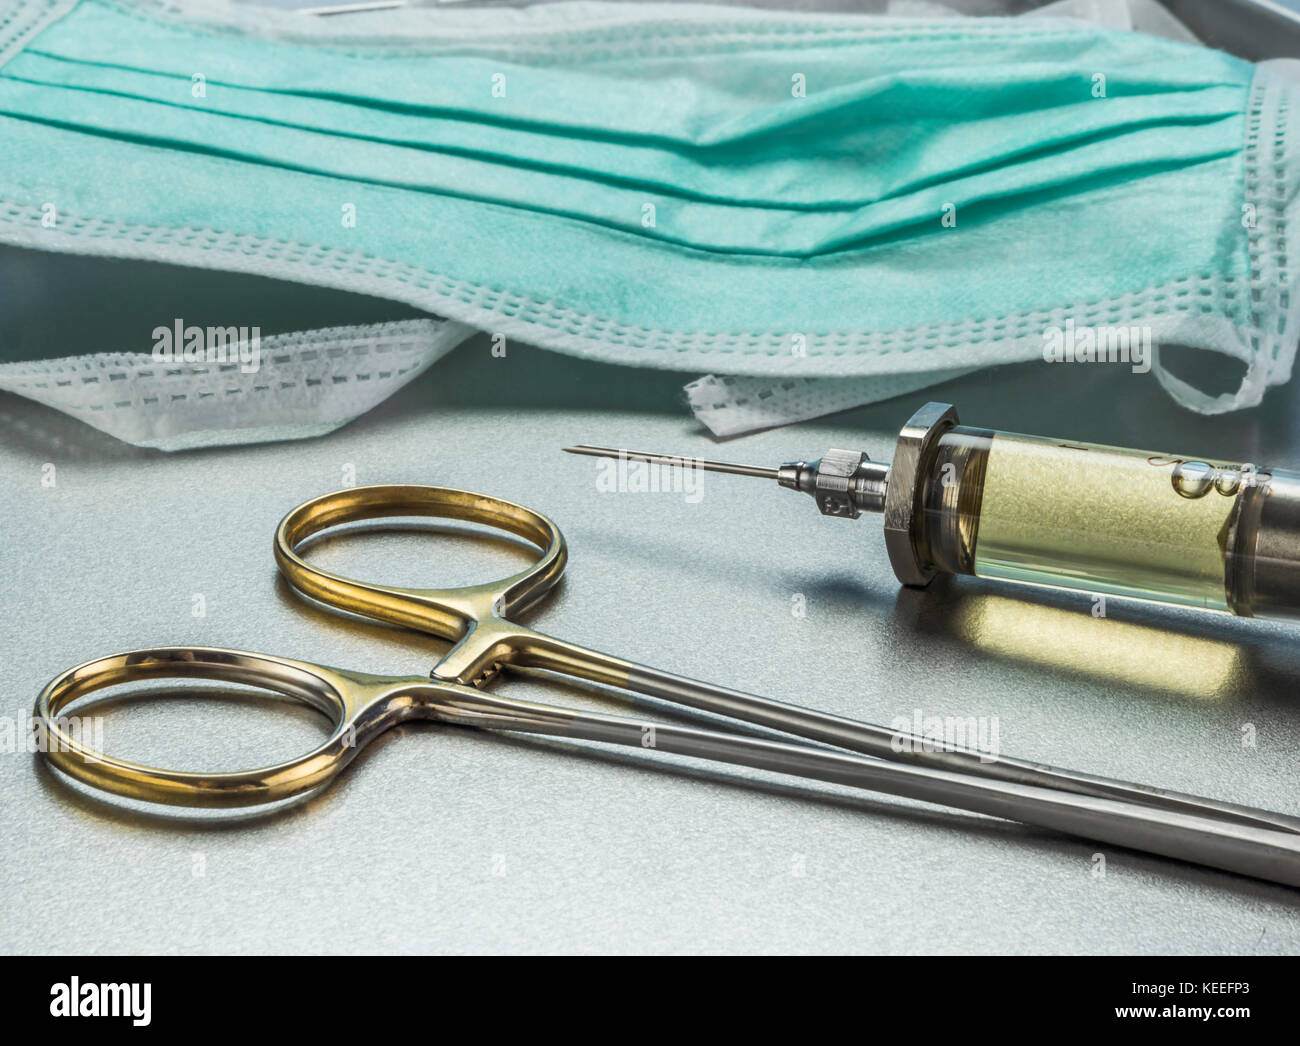 Instrumental chirurgische im Operationssaal, konzeptionelle Bild Stockfoto